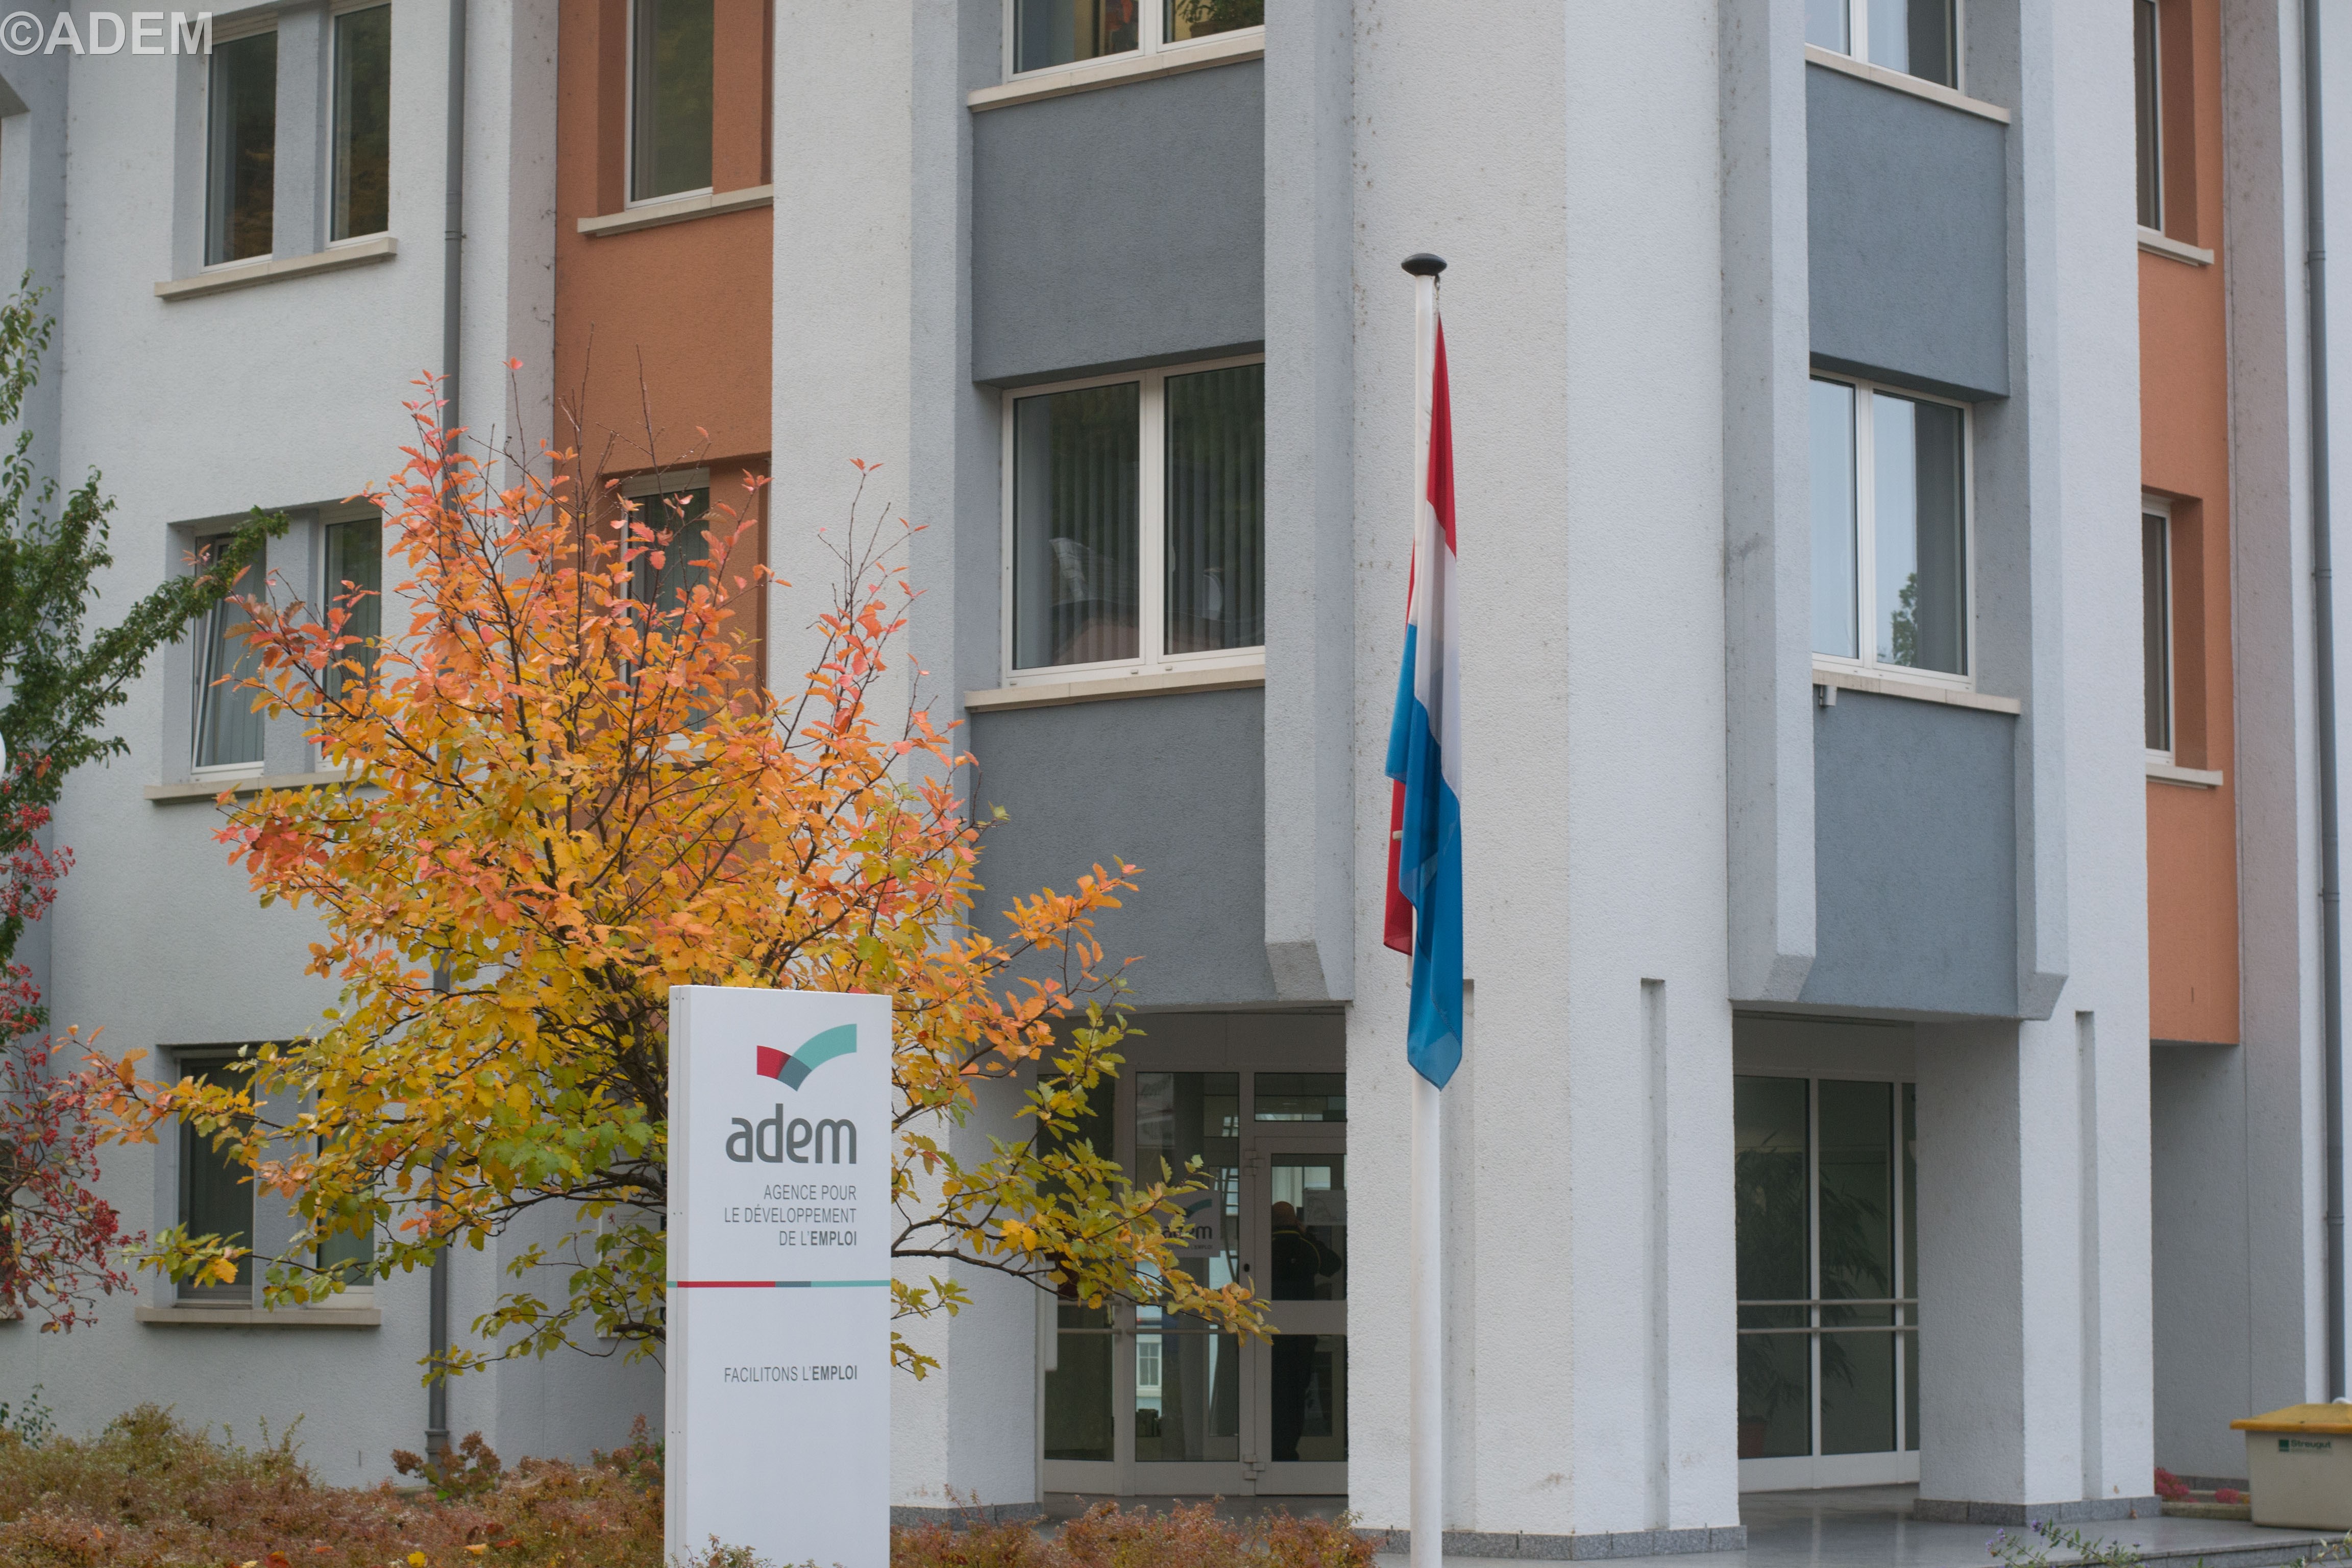  Inauguration de la nouvelle agence de l, Inauguration de la nouvelle agence de l’ADEM à Diekirch